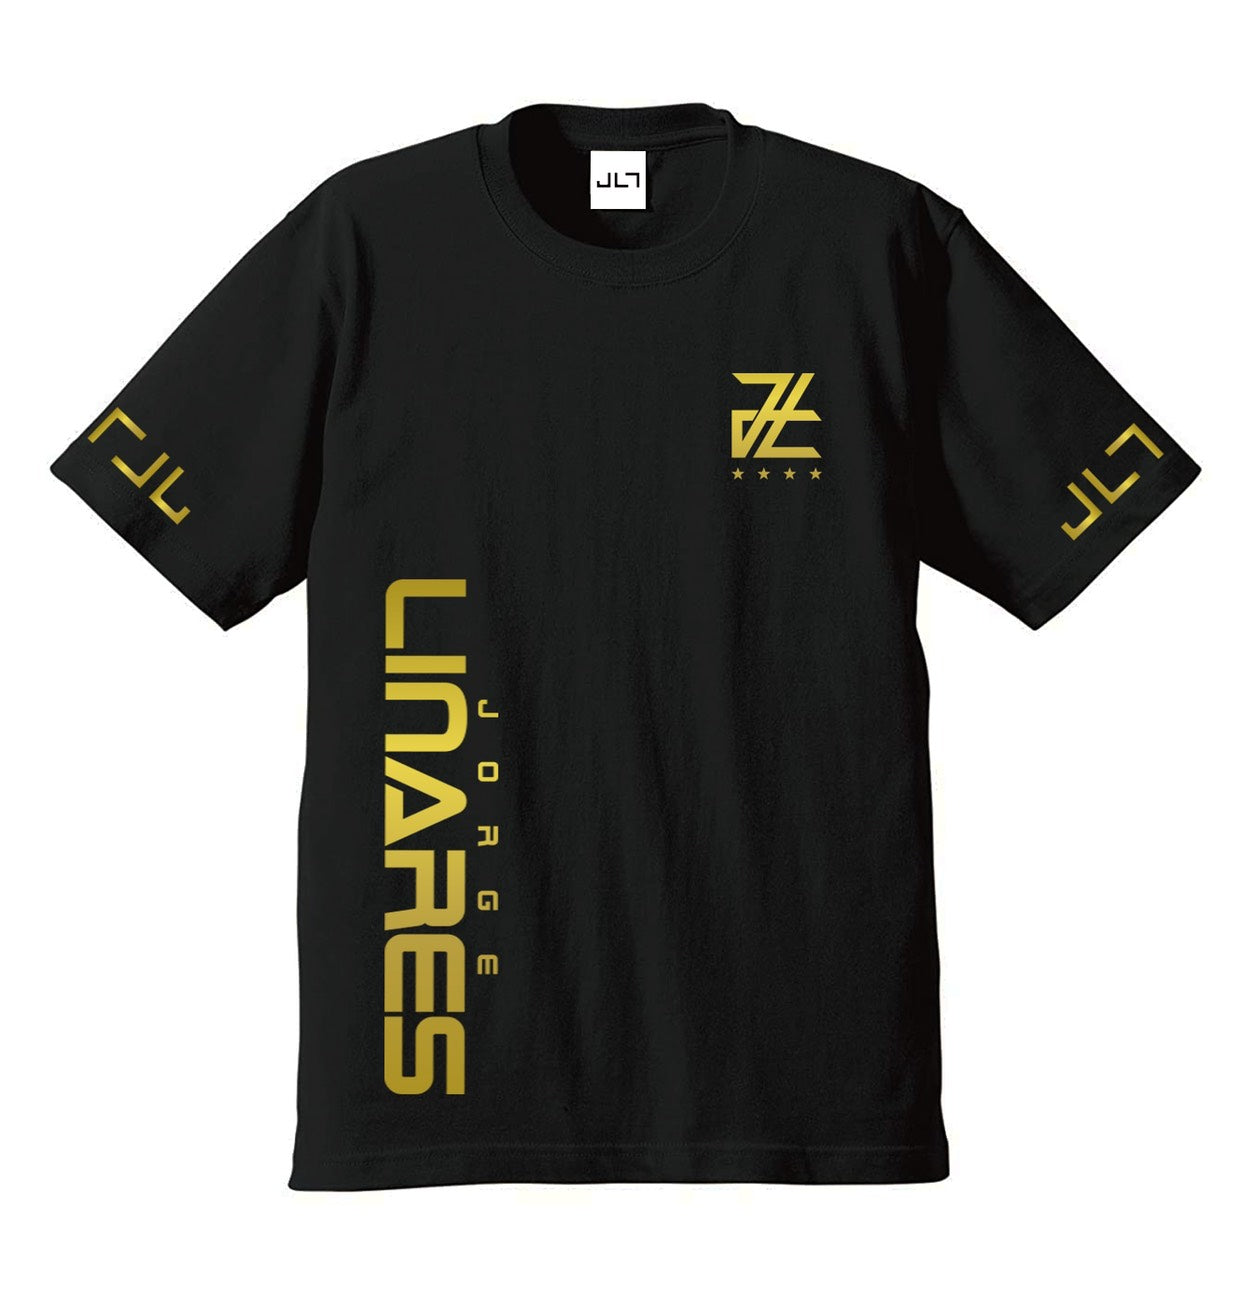 Tシャツ（LAST SAMURAI） – JL7 OFFICIAL SHOP -Jorge Linares